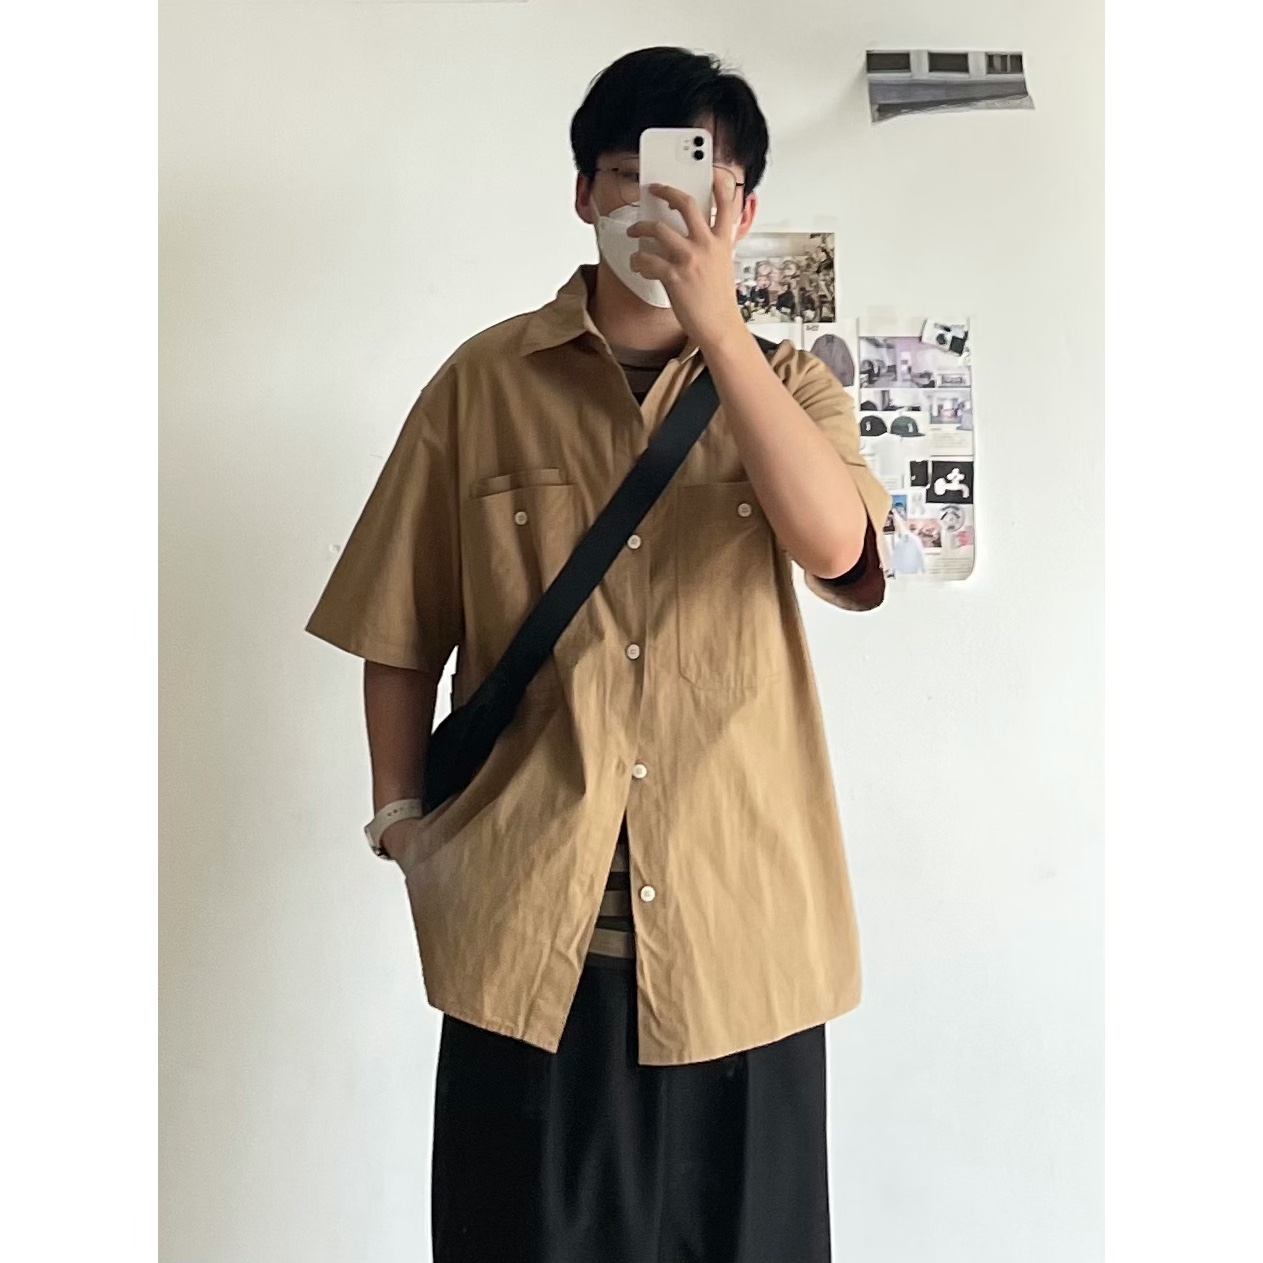 B东日系男装复古cityboy夏季棕色系中性衬衫多口袋宽松短袖衬衣